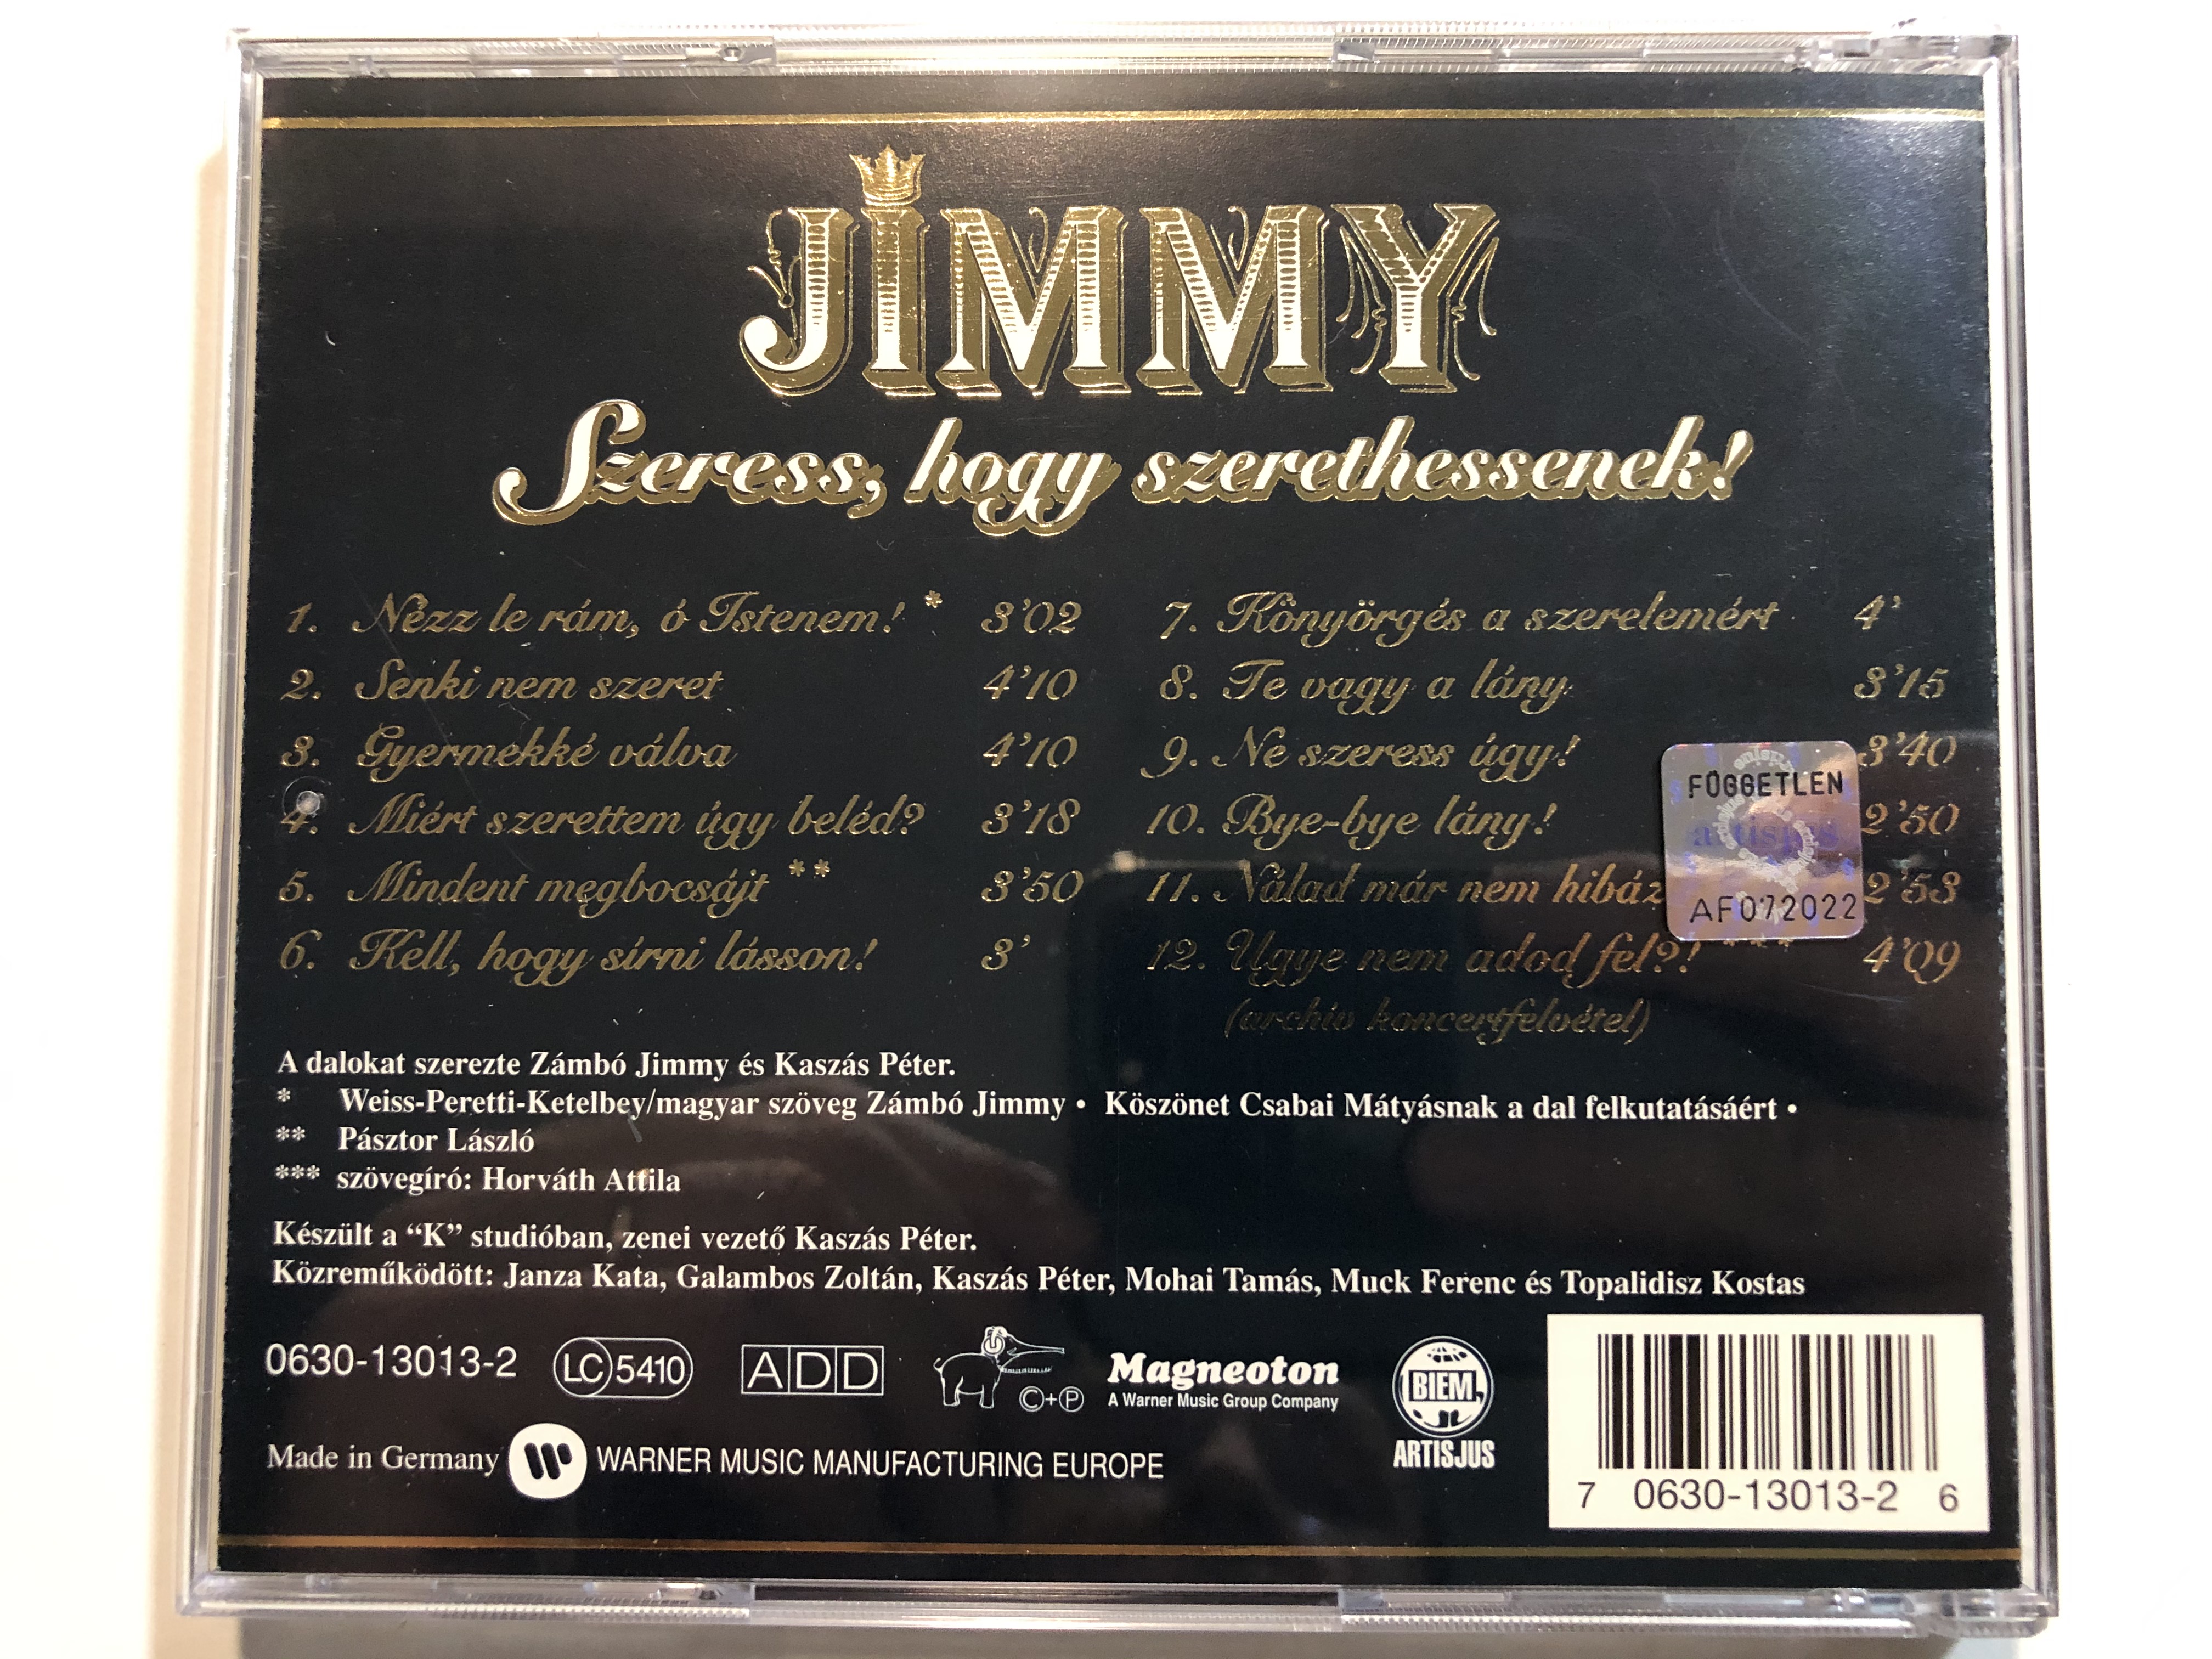 jimmy-szeress-hogy-szerethessenek-magneoton-audio-cd-0630-13013-2-4-.jpg